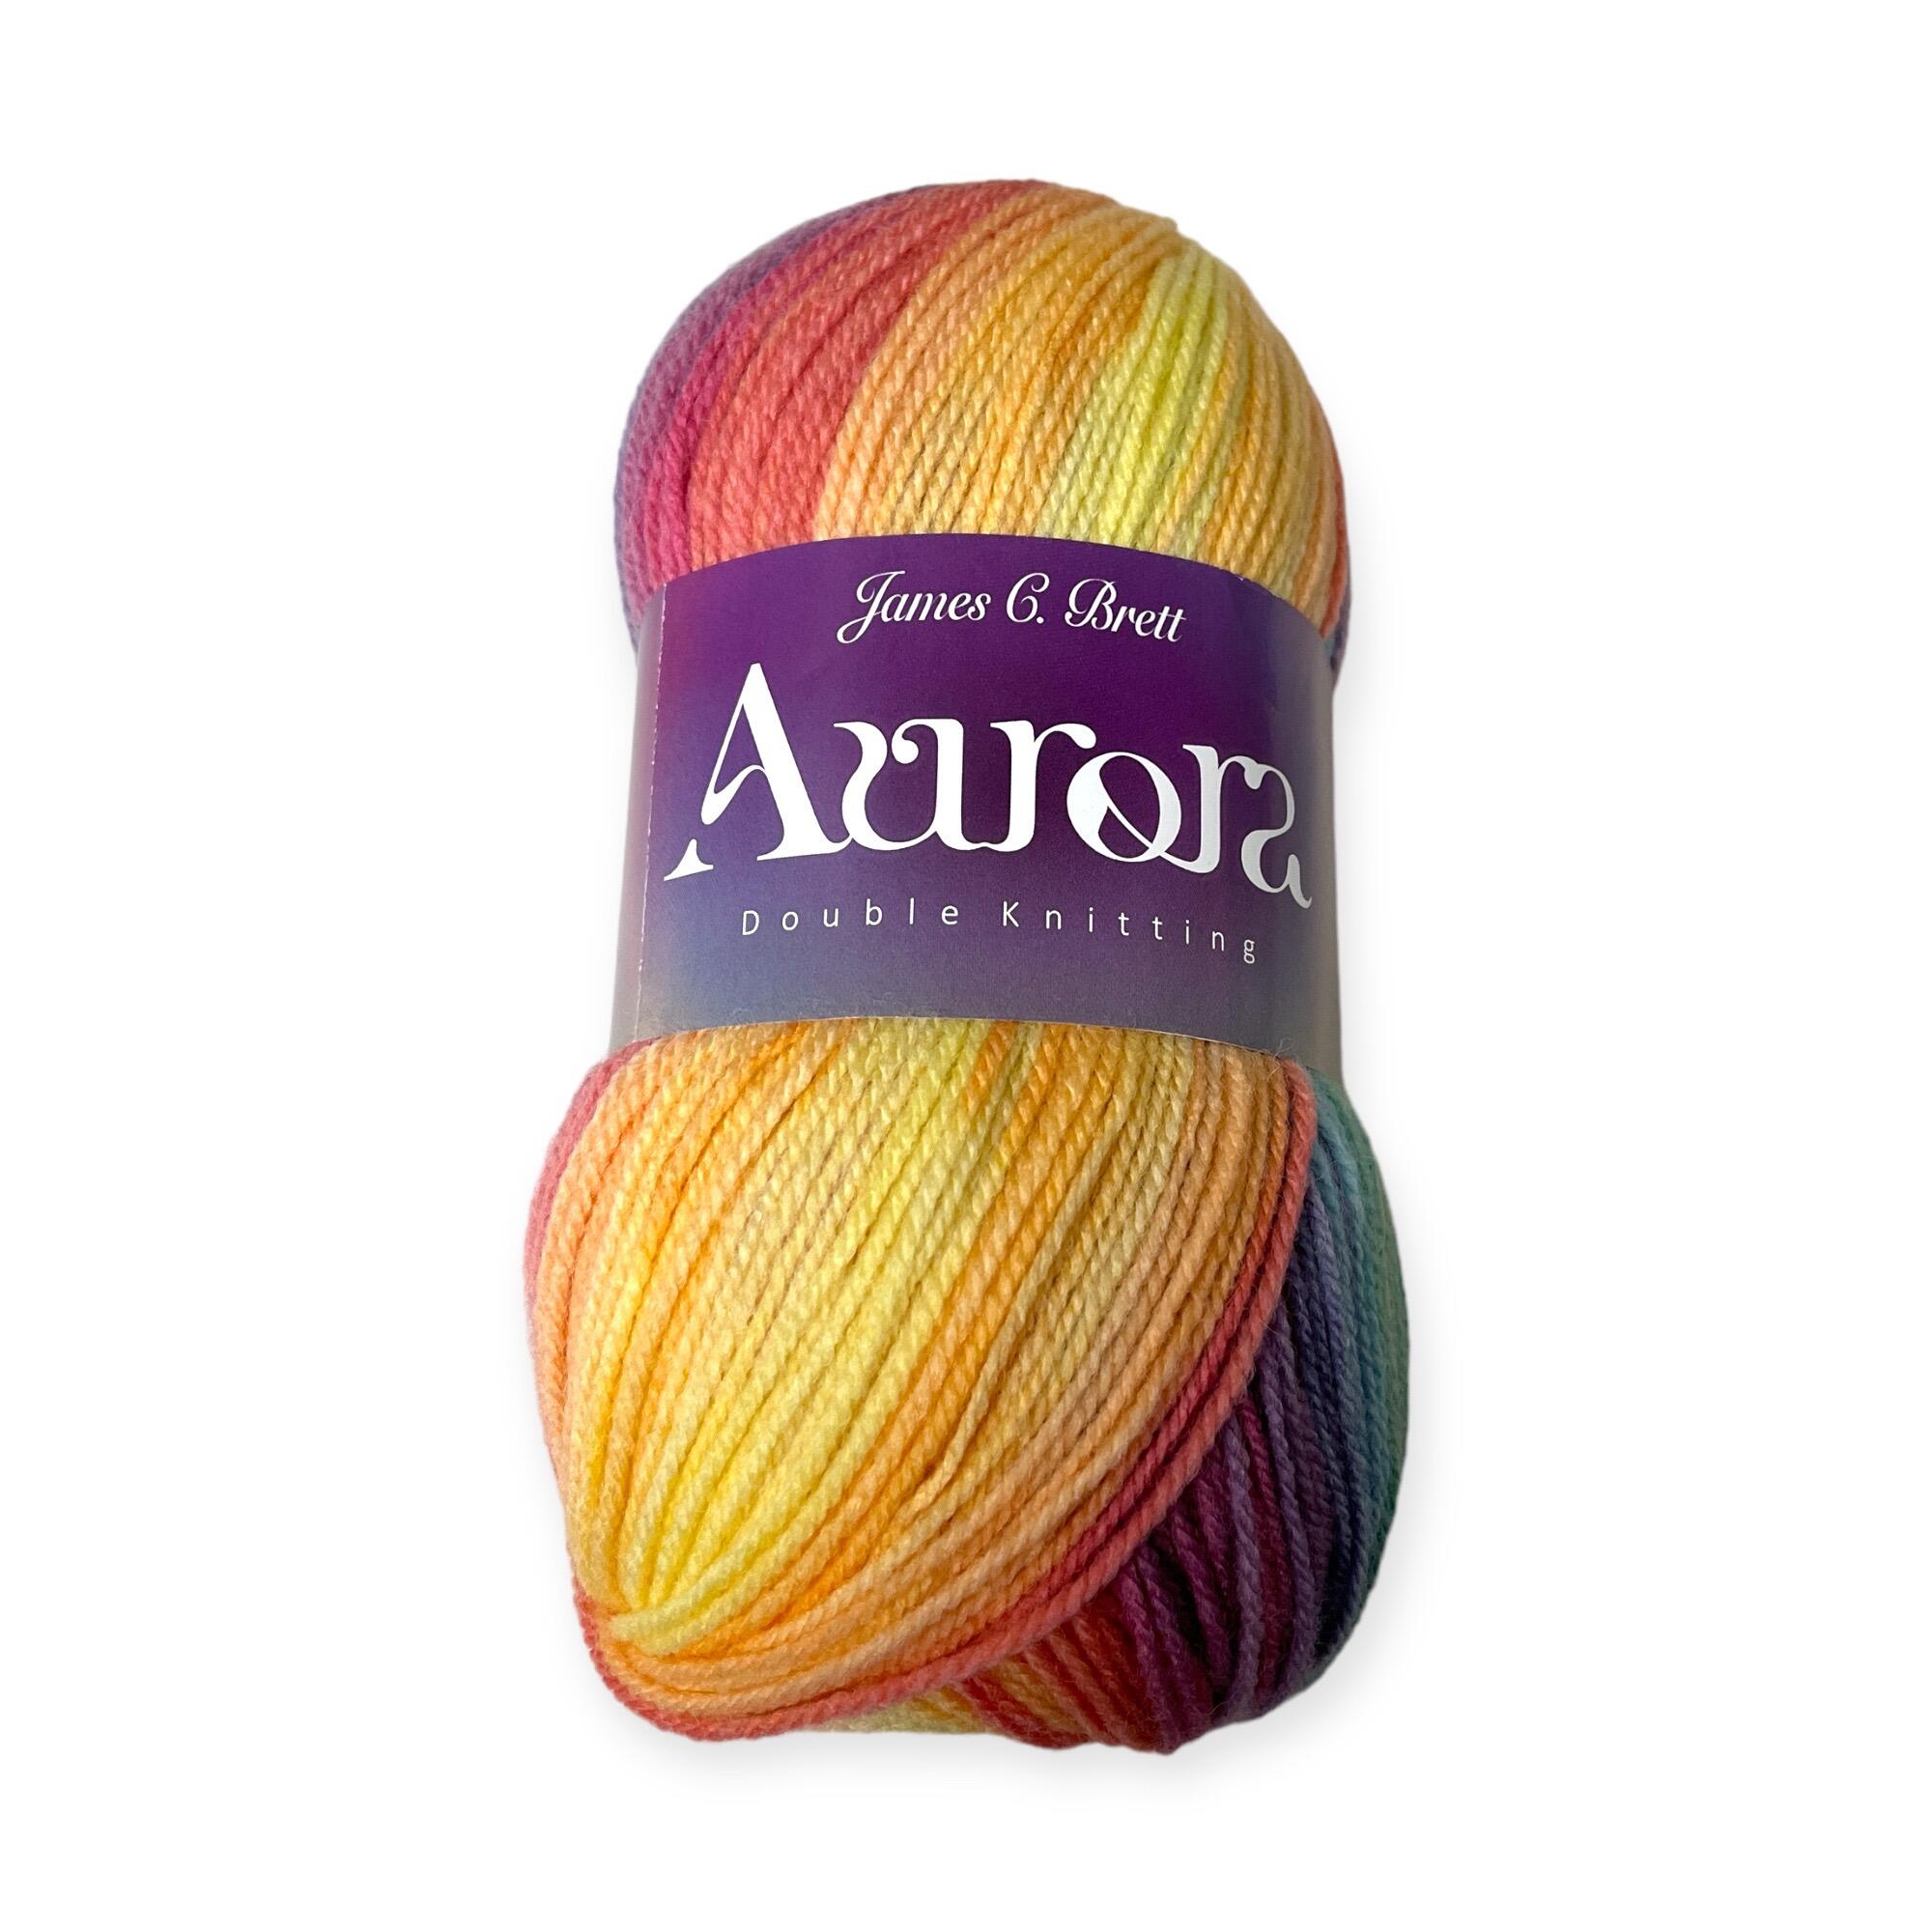 Aurora by James C Brett in the Colour shade AU02